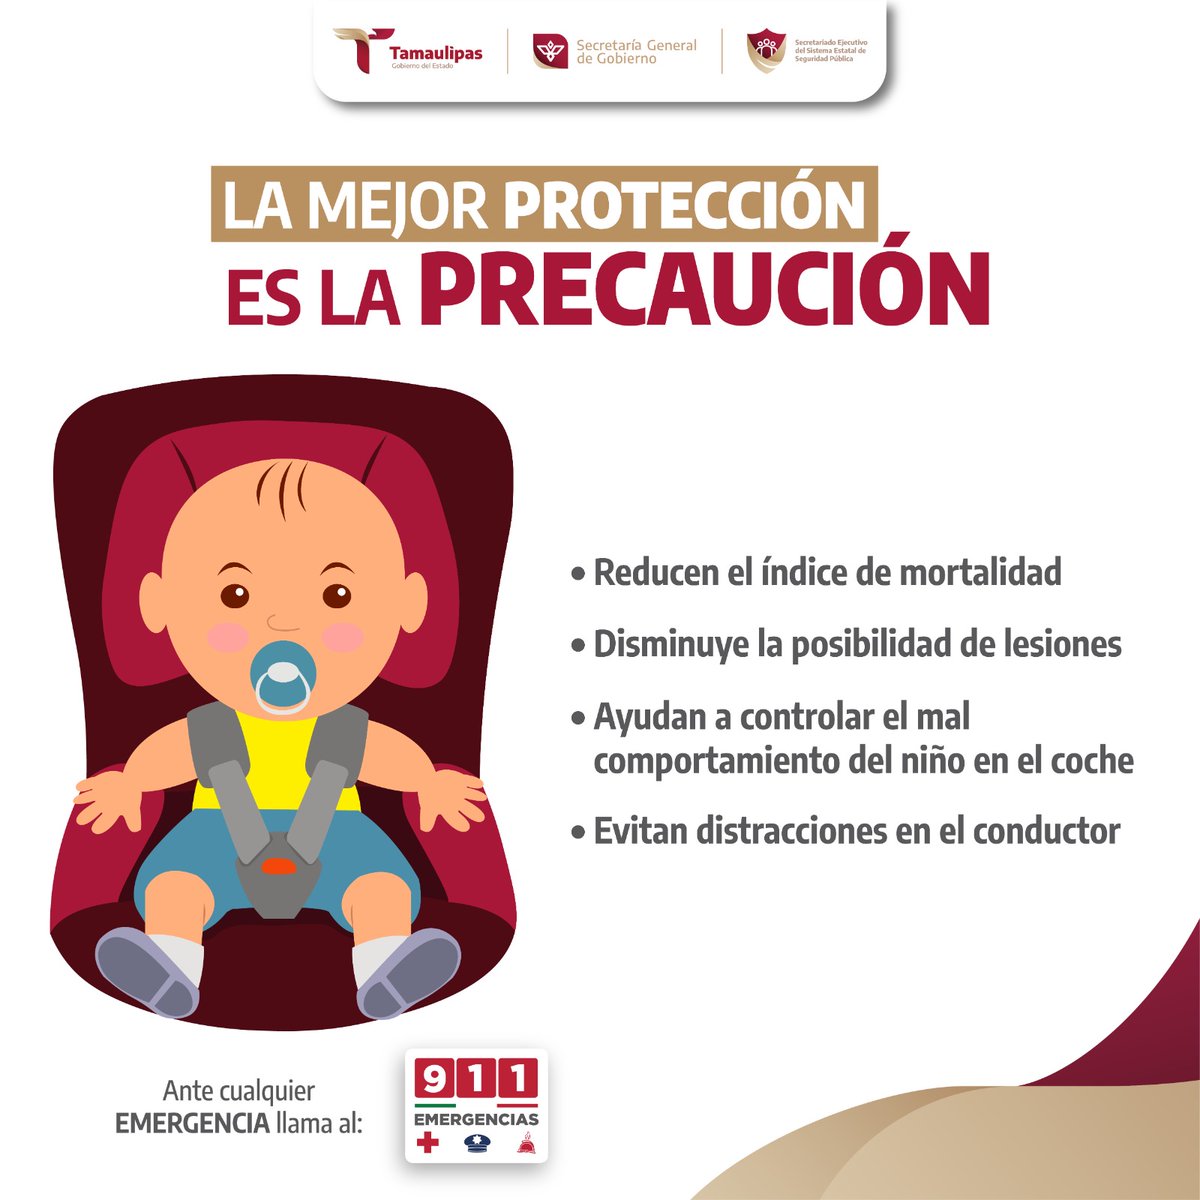 Si viajas con menores en vehículo, toma en cuenta las siguientes recomendaciones.🚘

#ConfíaEnEl911